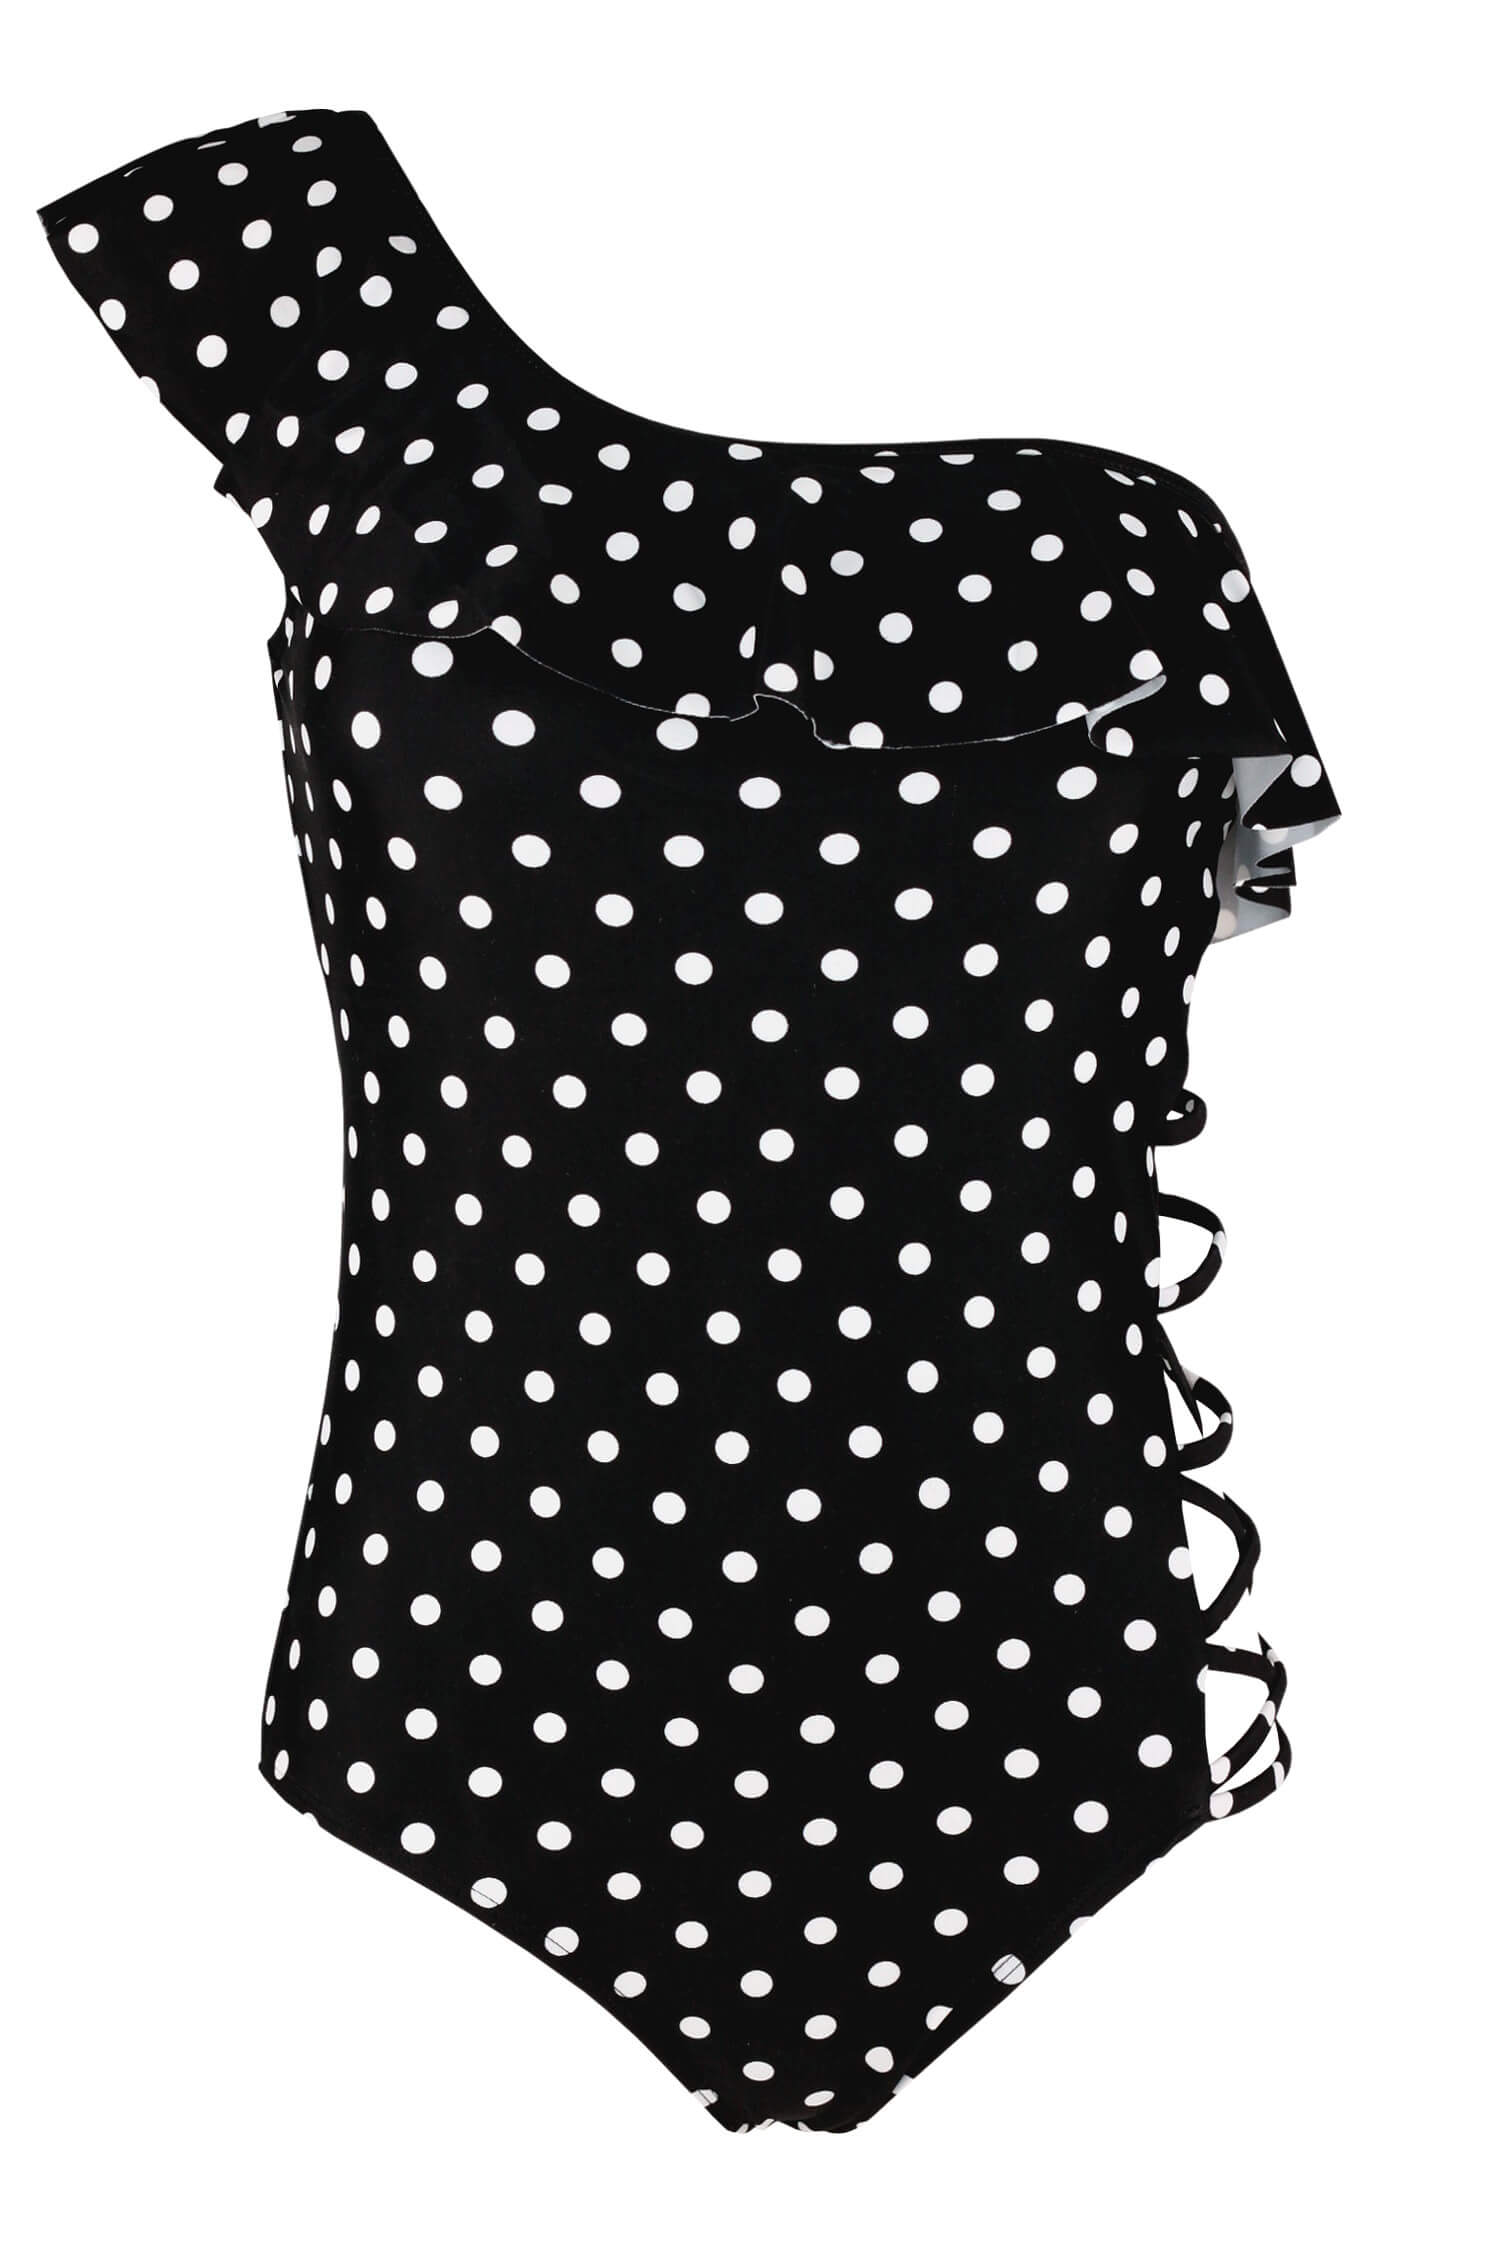 Lapiza Black pin-up styl jednodílné plavky s puntíky AB164 M černá